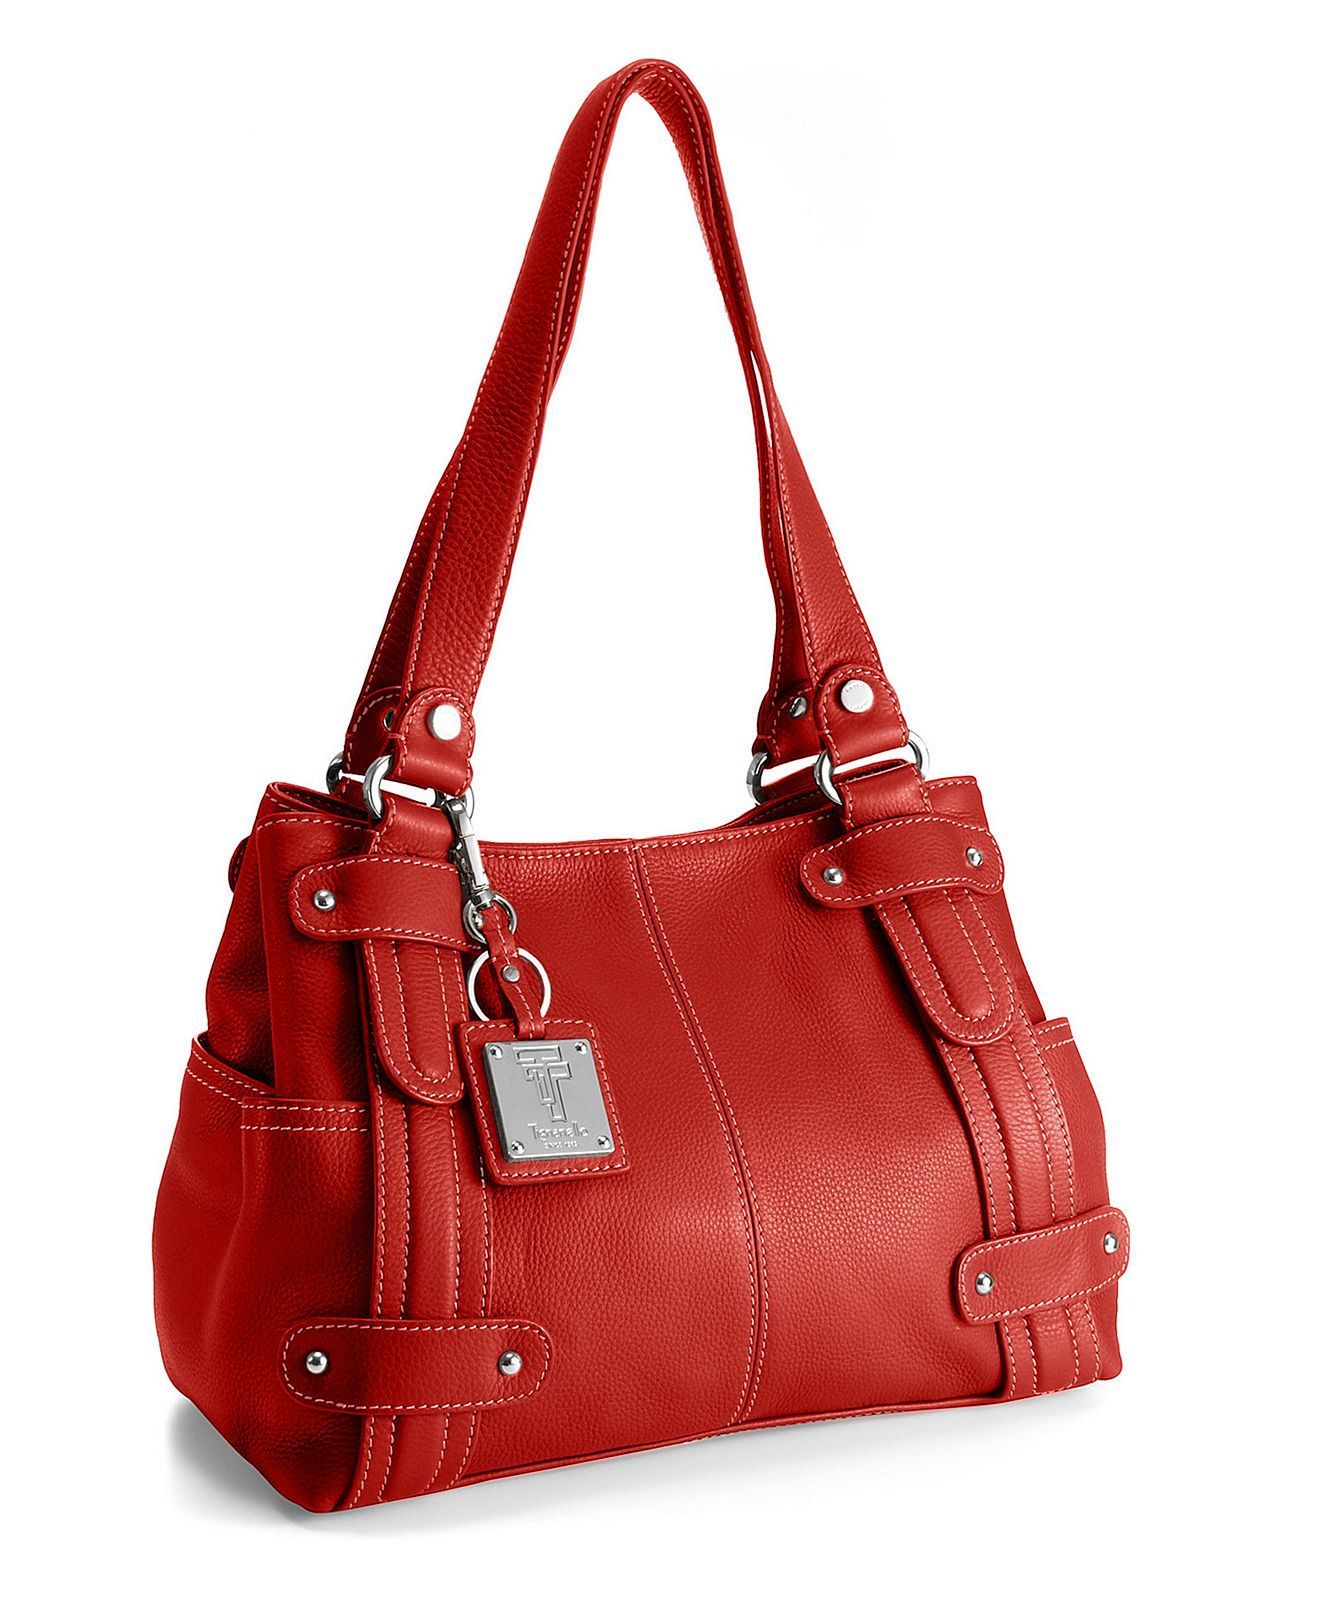 I want a red handbag